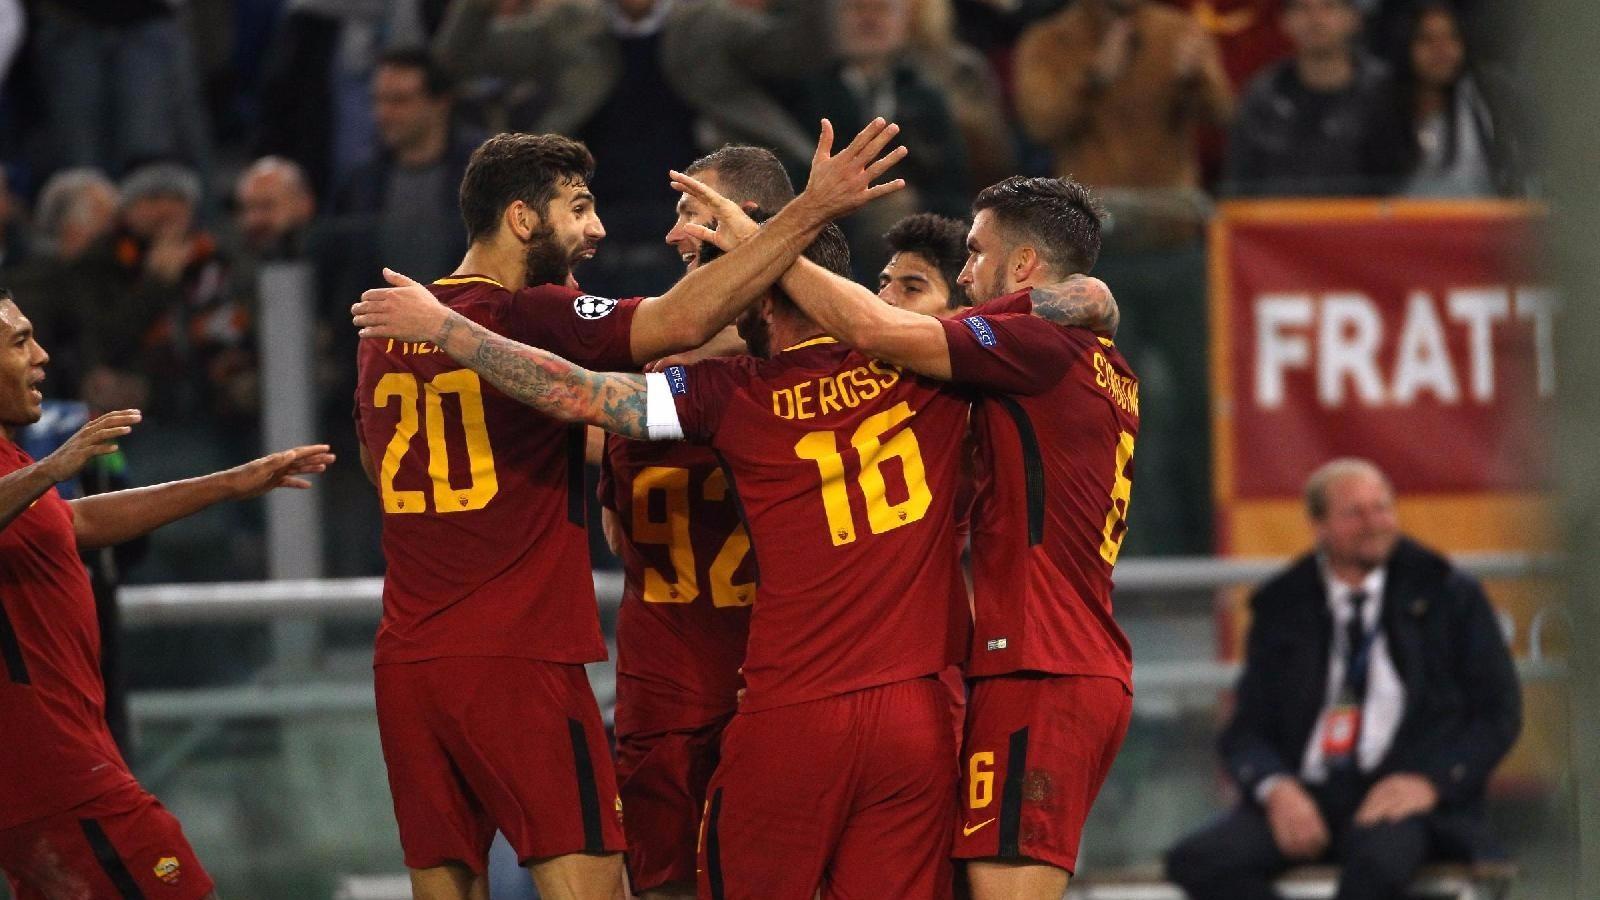 [FOTO] Roma-Chelsea, le reazioni social: Monchi e Totti festeggiano insieme